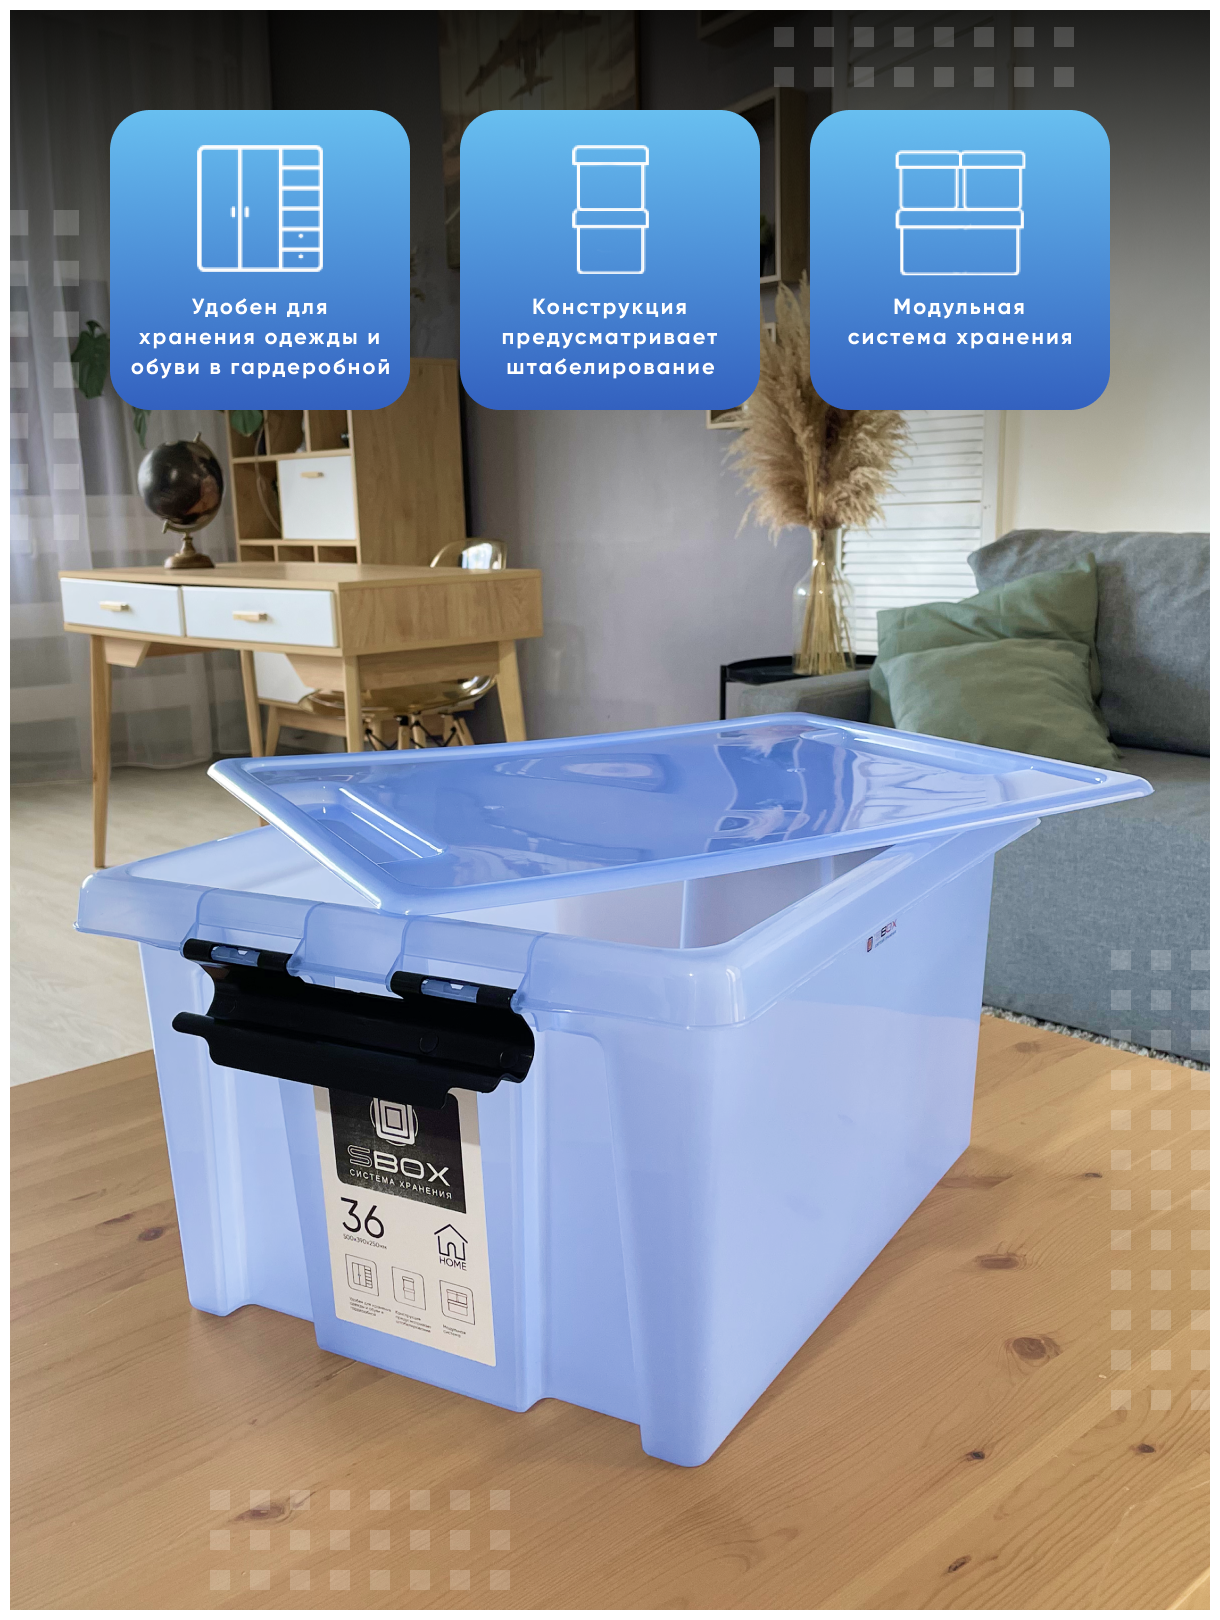 Контейнер пластиковый прозрачный синий с крышкой на защелках для хранения вещей, продуктов или игрушек, емкость 36л, набор 3 шт, SBOX - фотография № 2